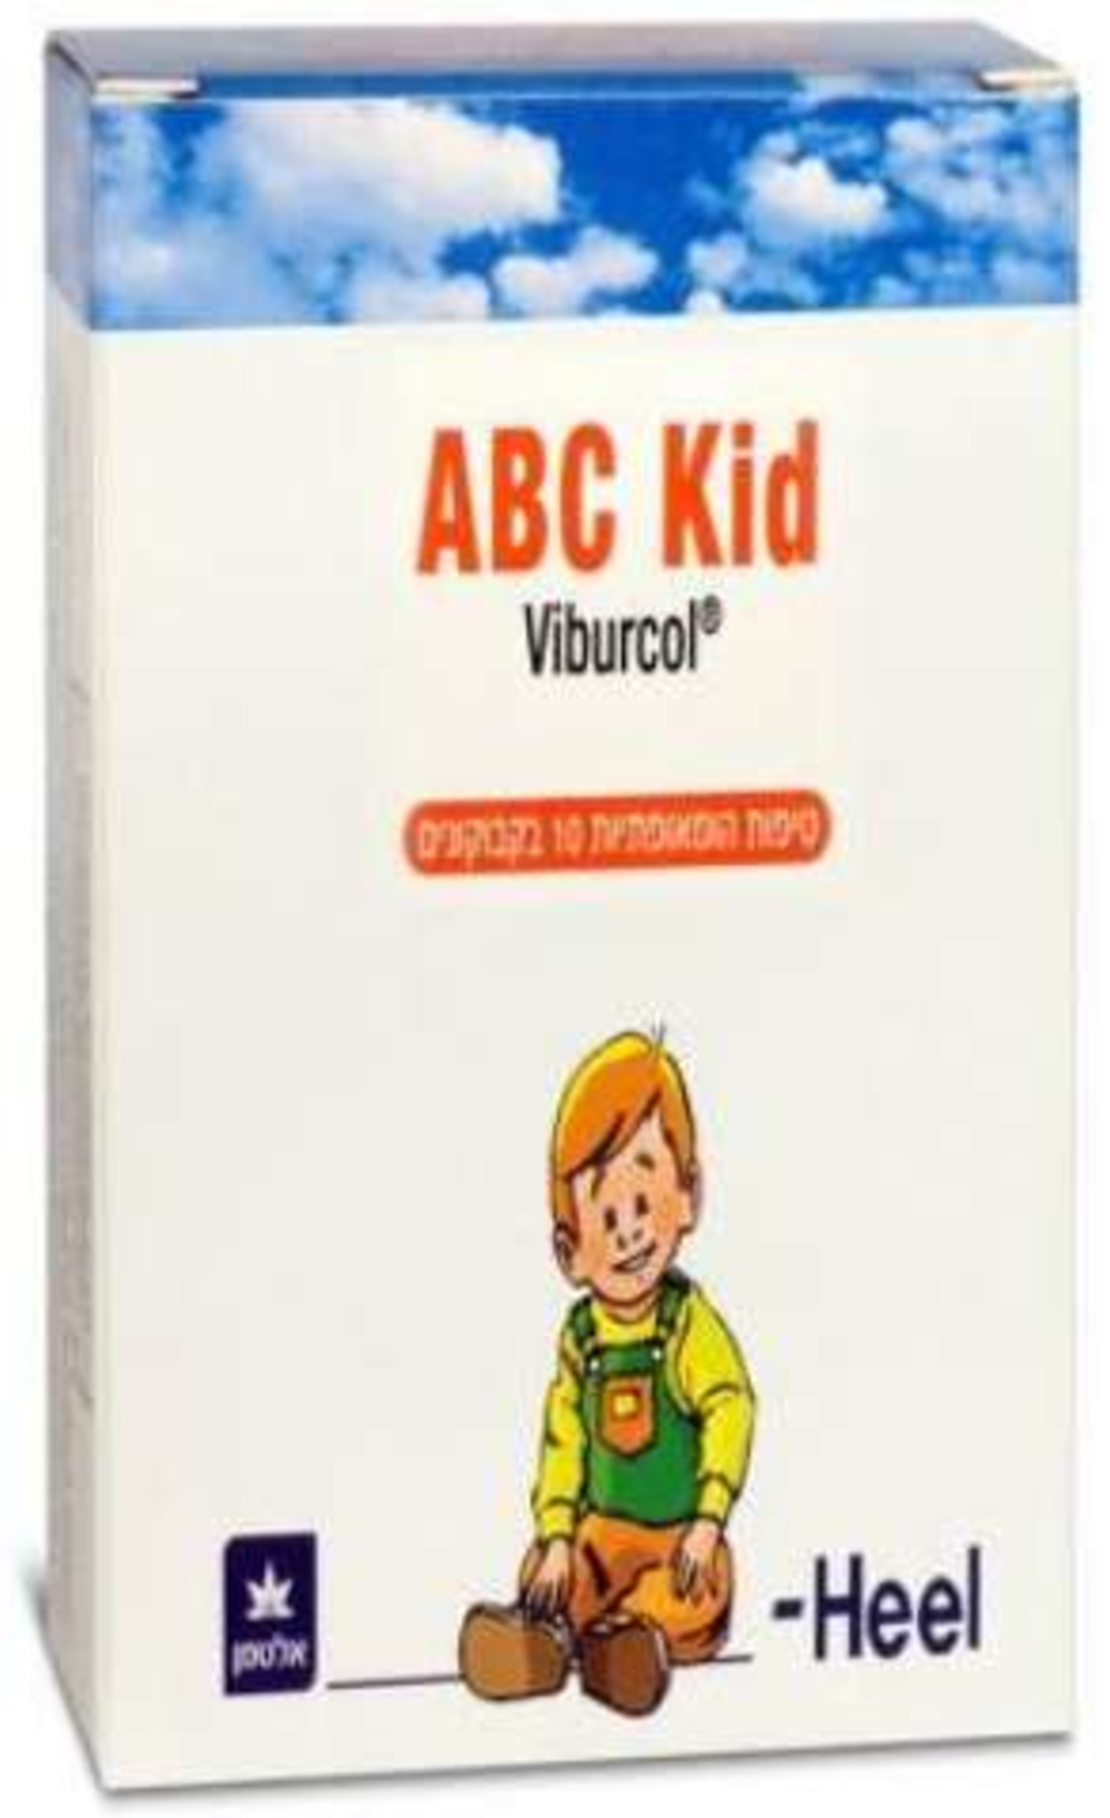 אי בי סי קיד היל טיפות הומאופתיות ABC Kid Viburcol